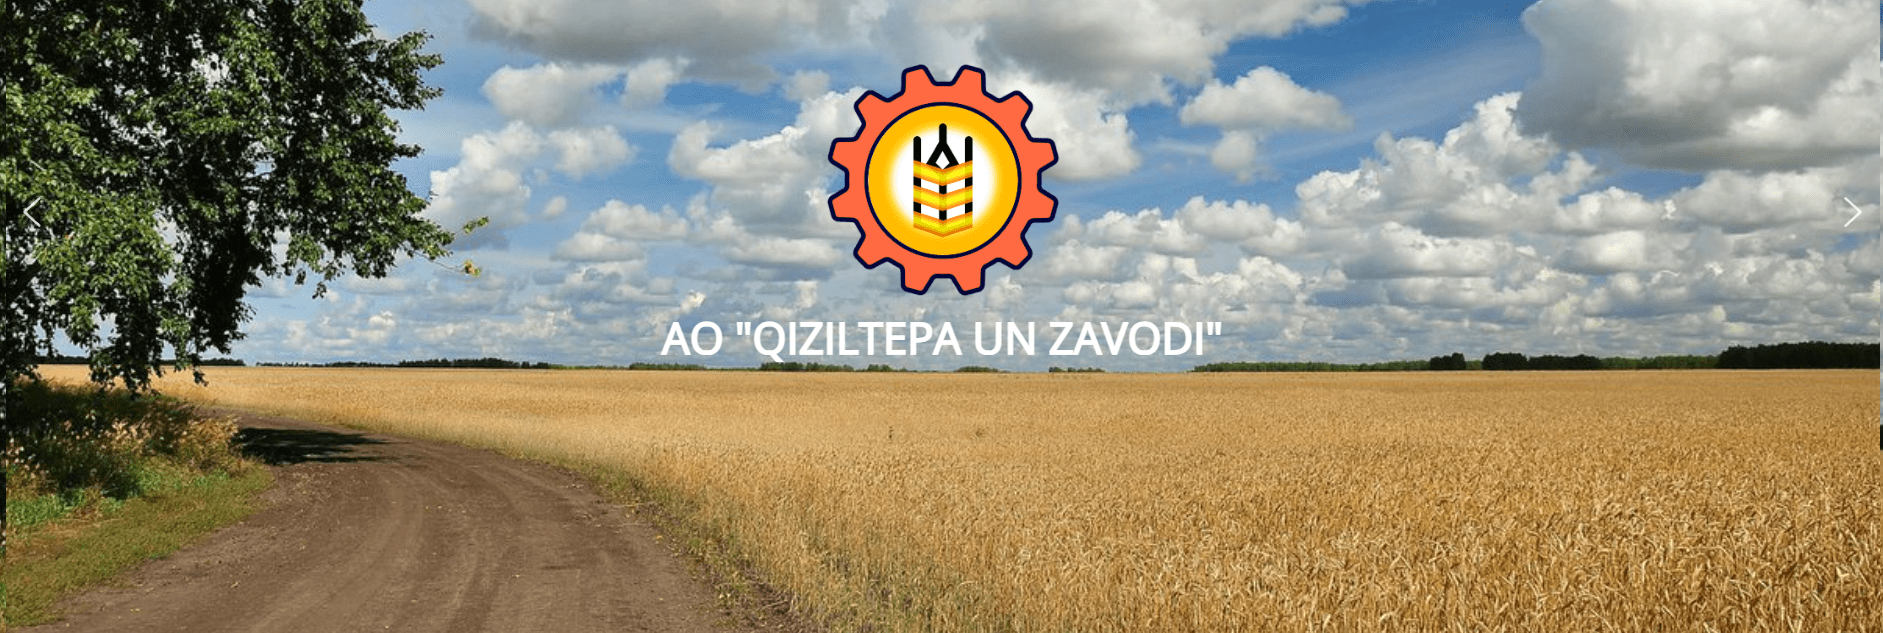 QIZILTEPA UN ZAVODI (qiziltepaunzavod.uz) - официальный сайт